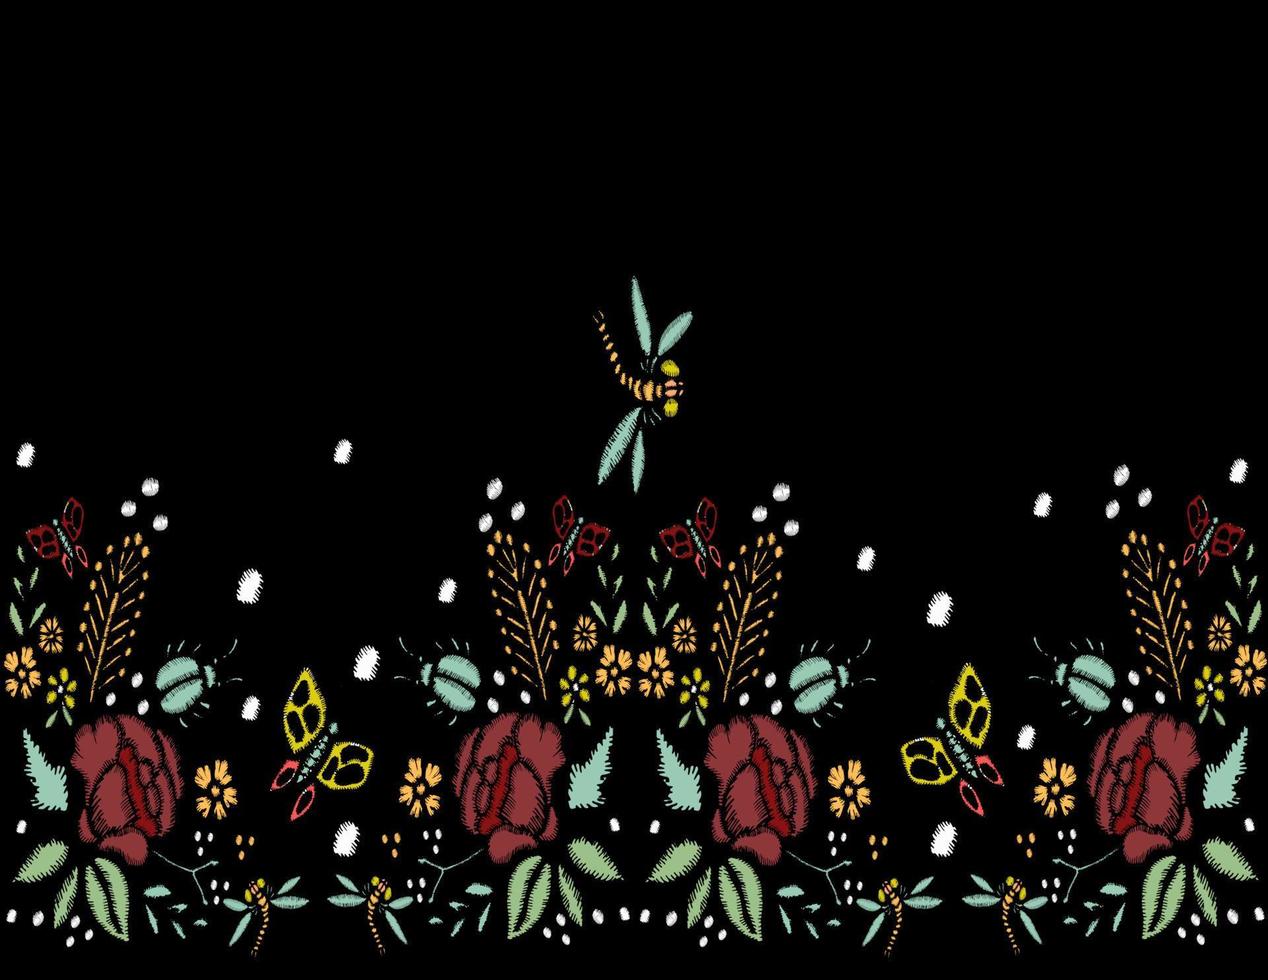 points de broderie avec des roses, des fleurs des prés, des libellules, des papillons, des coléoptères. illustration de mode vecteur dessiné à la main. bordure florale. sur fond noir. pour tissu, décoration textile.